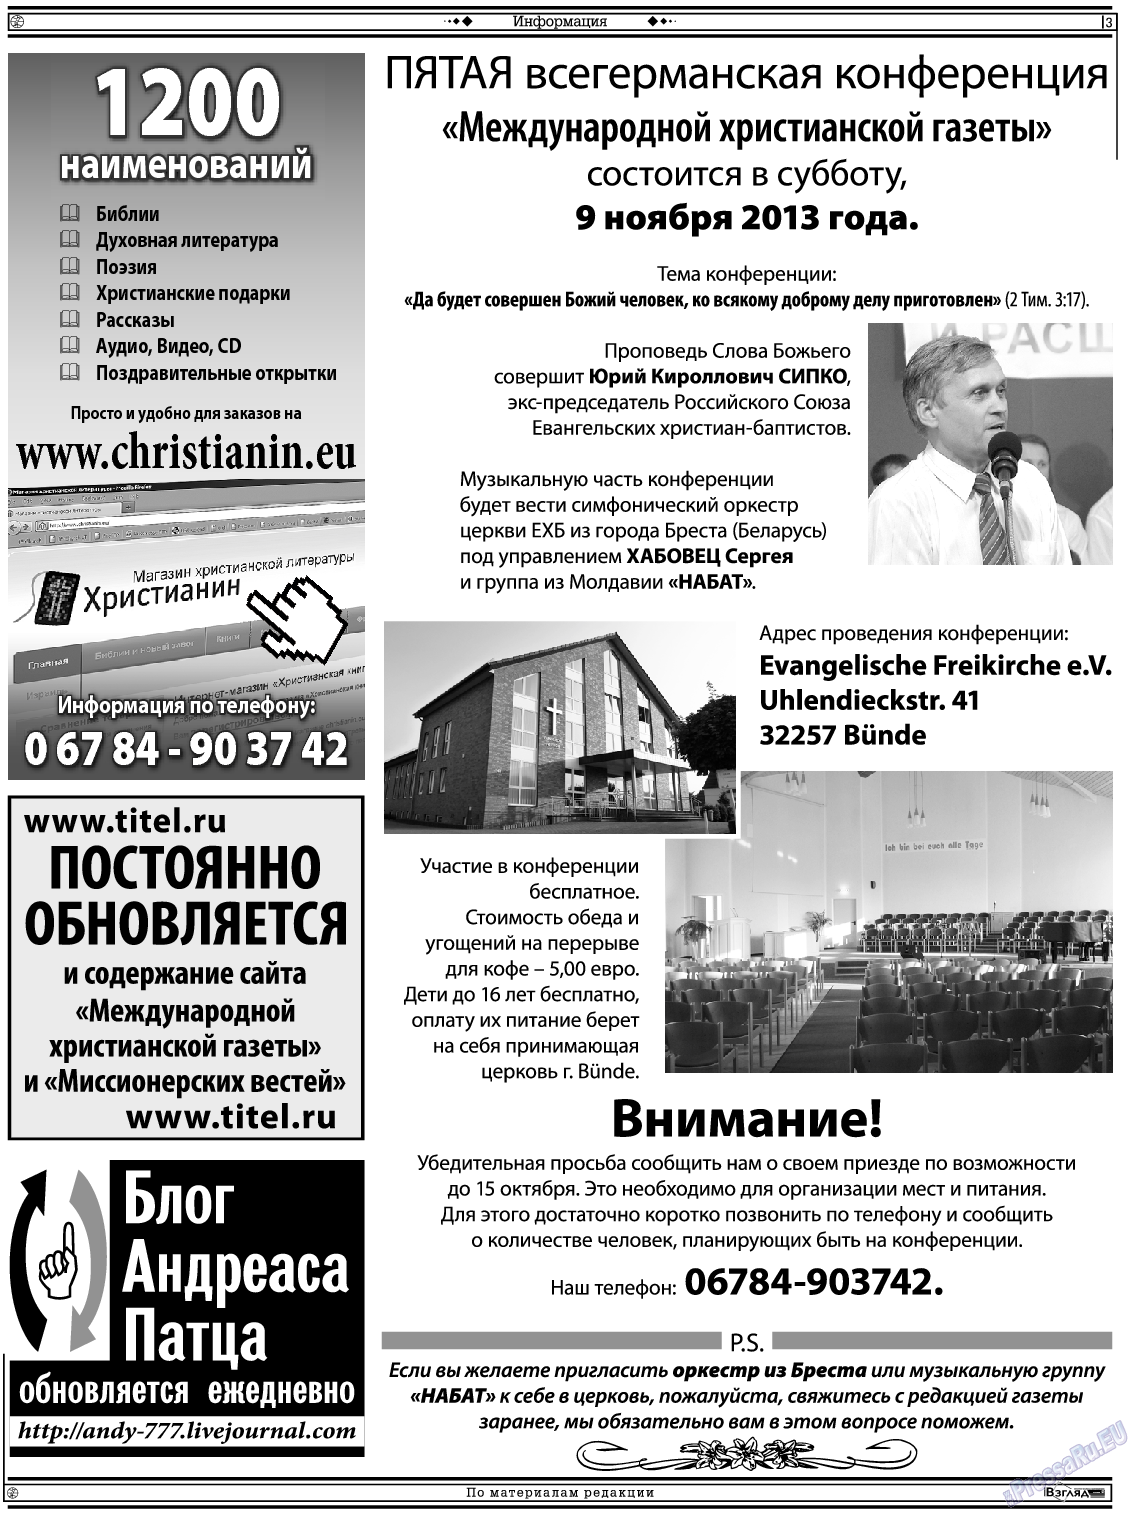 Христианская газета (газета). 2013 год, номер 8, стр. 17